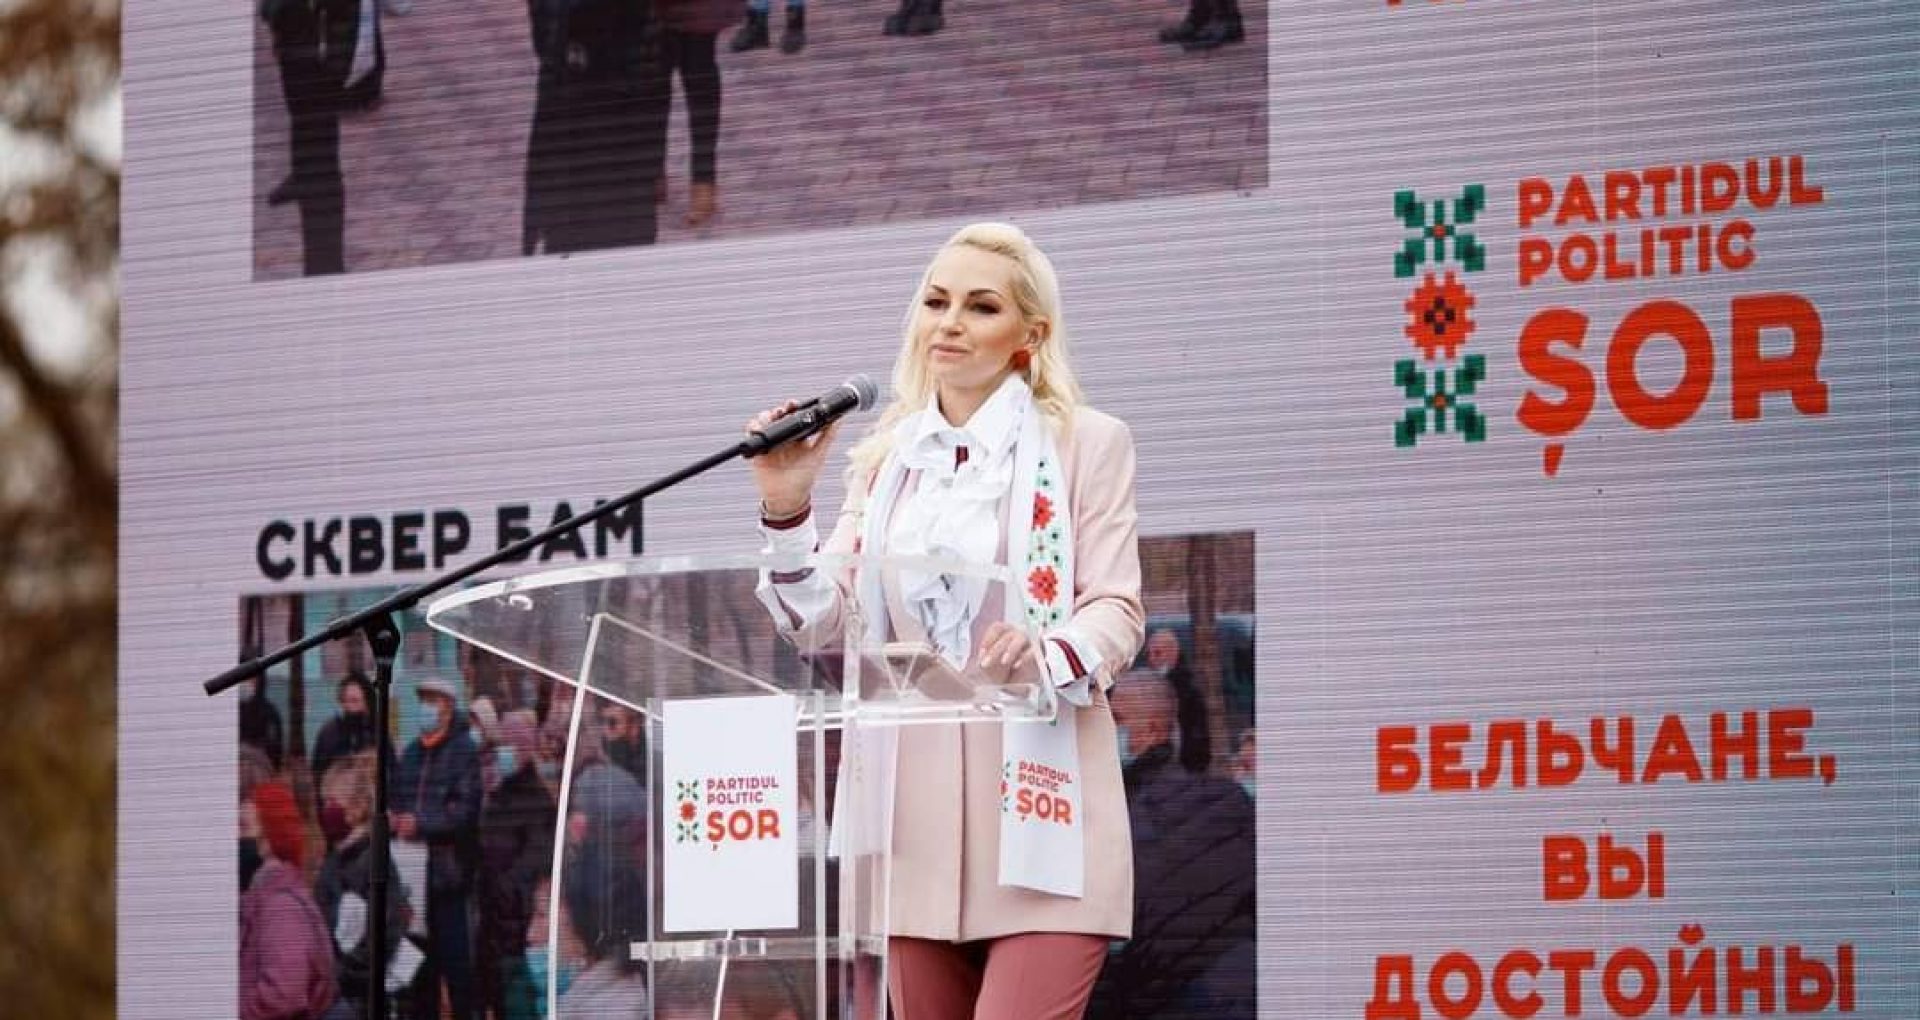 Concurenta electorală Marina Tauber, desemnată de Partidul Politic „Șor” la funcția de primar al mun. Bălți, a contestat la Curtea de Apel Chișinău hotărârea CEC privind excluderea sa din cursa electorală